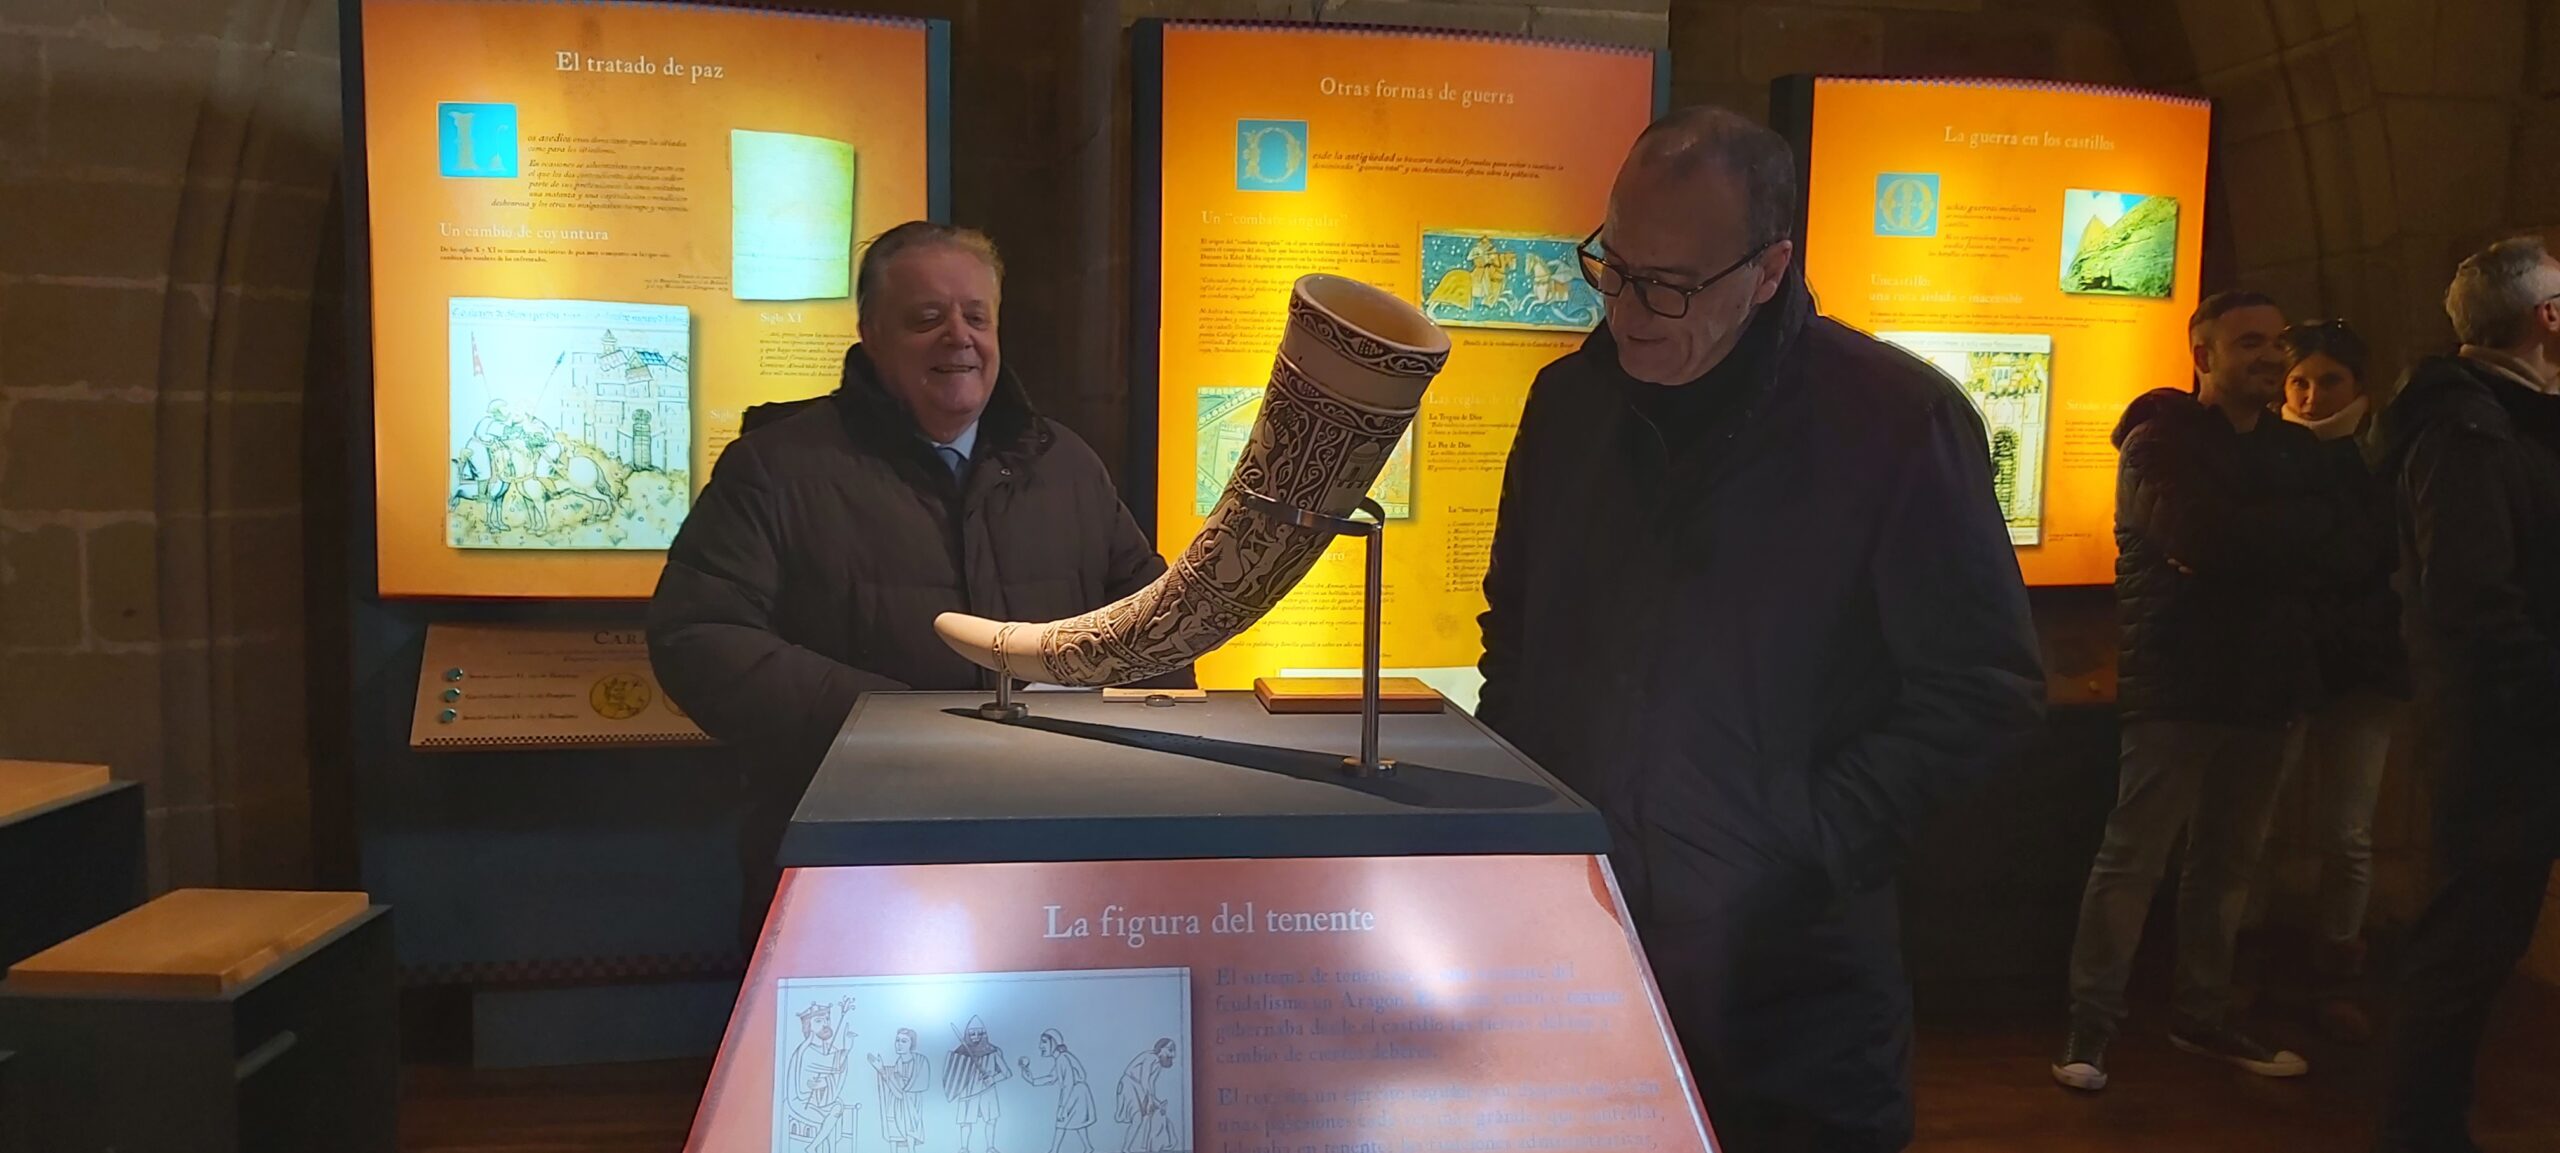 El consejero Felipe Faci visita Uncastillo. Visita al espacio expositivo del castillo de Peña Ayllón